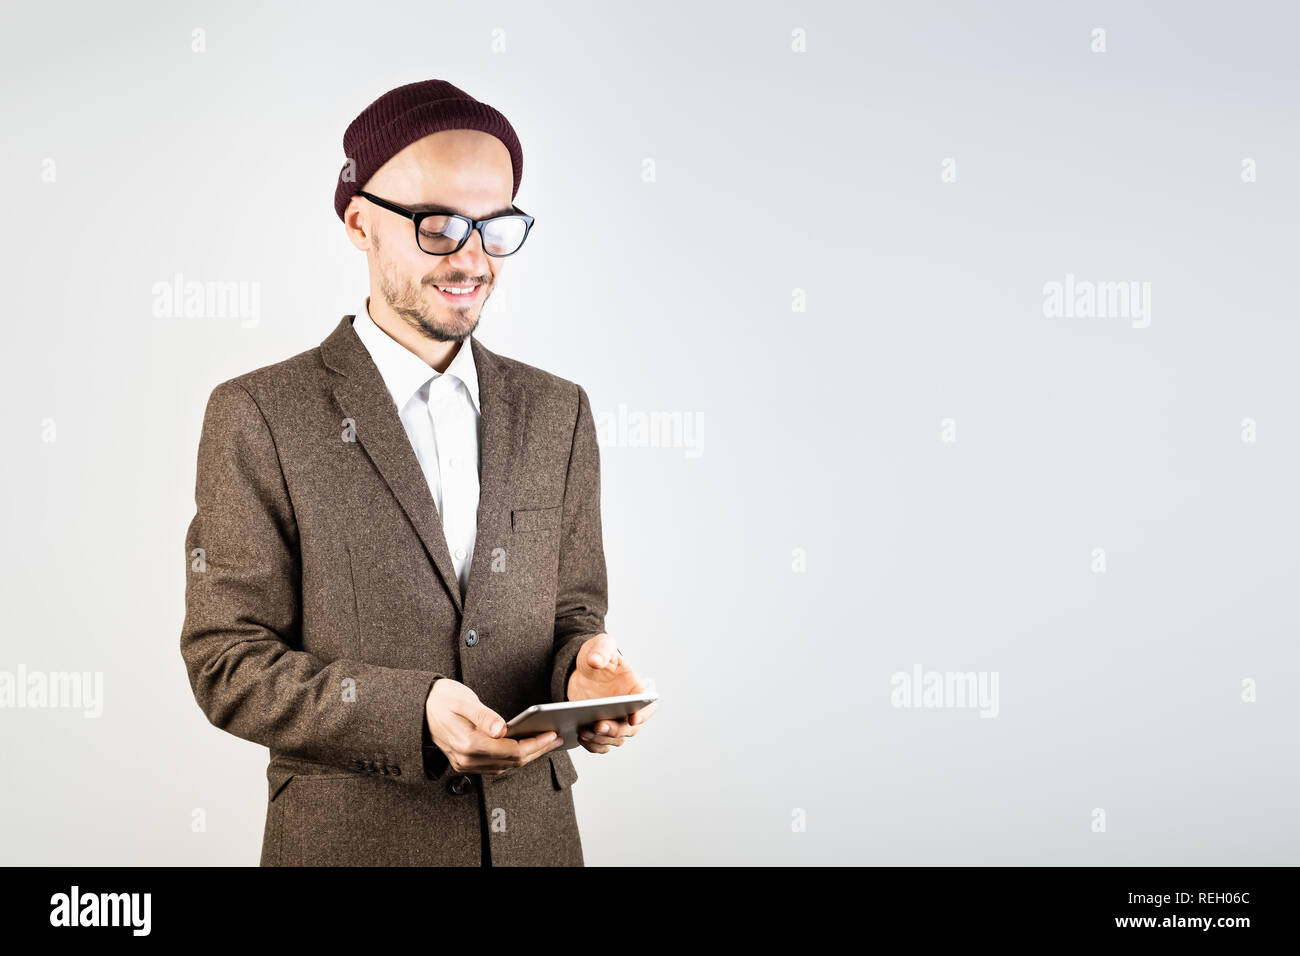 Lächelnd Mann in Tweed Jacket mit einem Tablet-PC. Männliche Person in Hipster style Kleidung verwendet die Technologie, Studio shot auf weißem Hintergrund Stockfoto